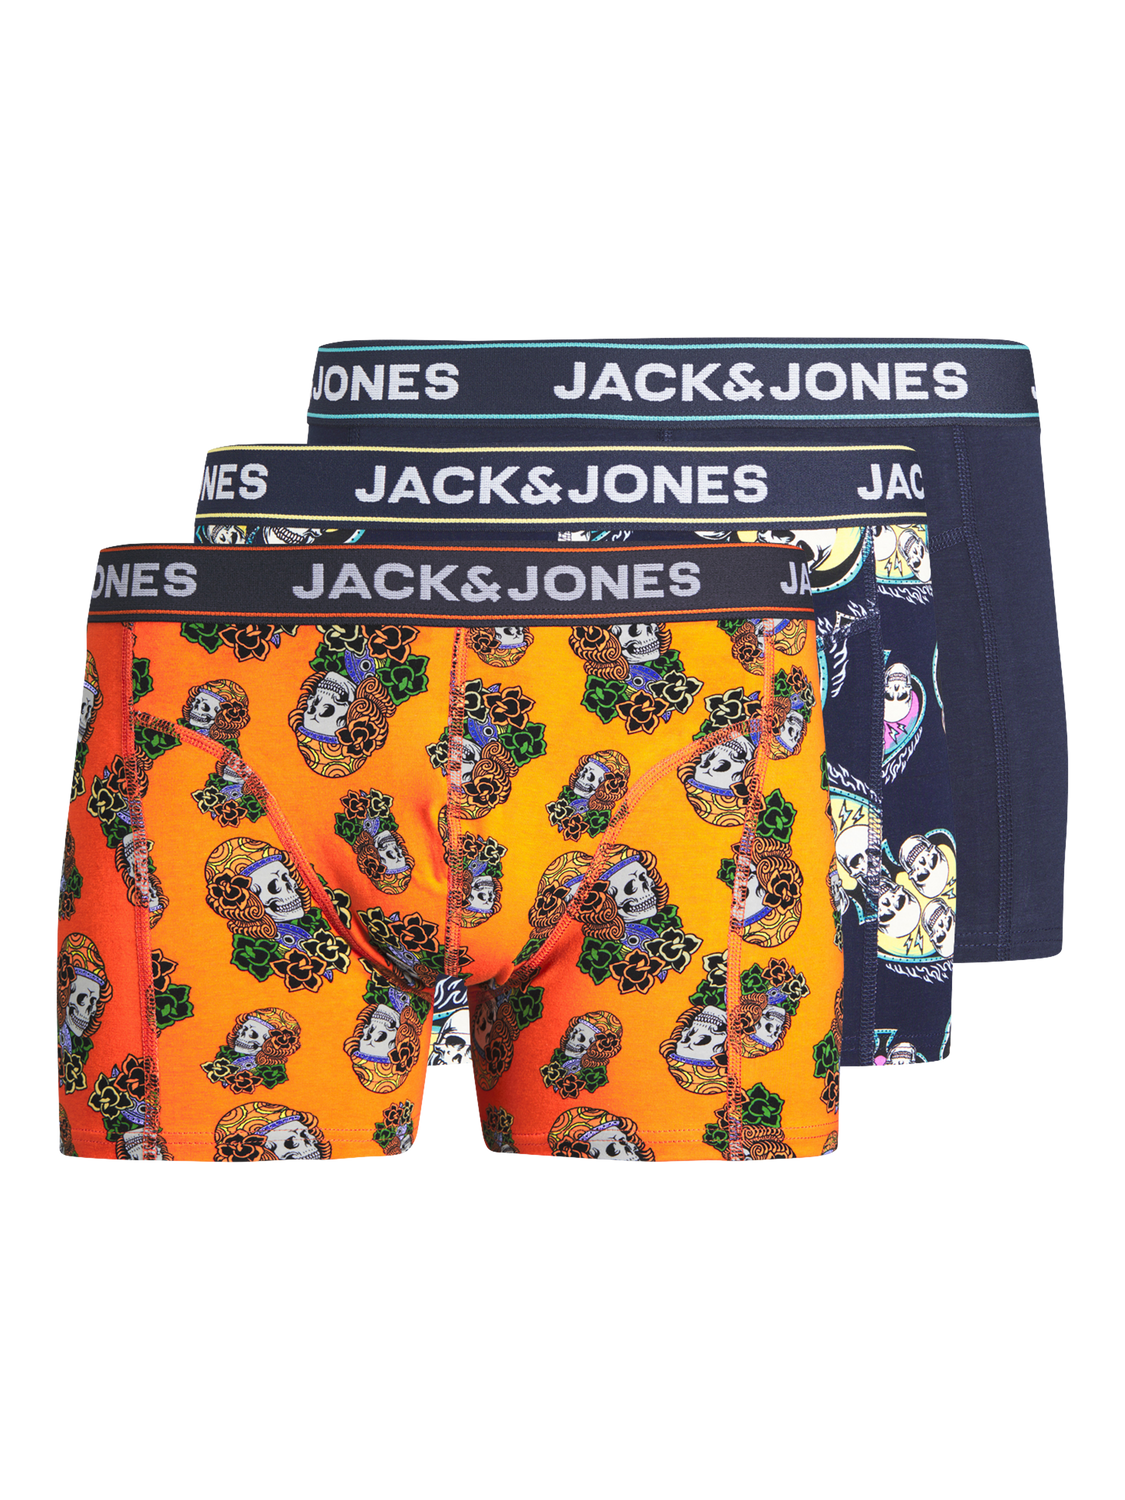 Jack & Jones Plus 3-balení Trenýrky -Navy Blazer - 12257398